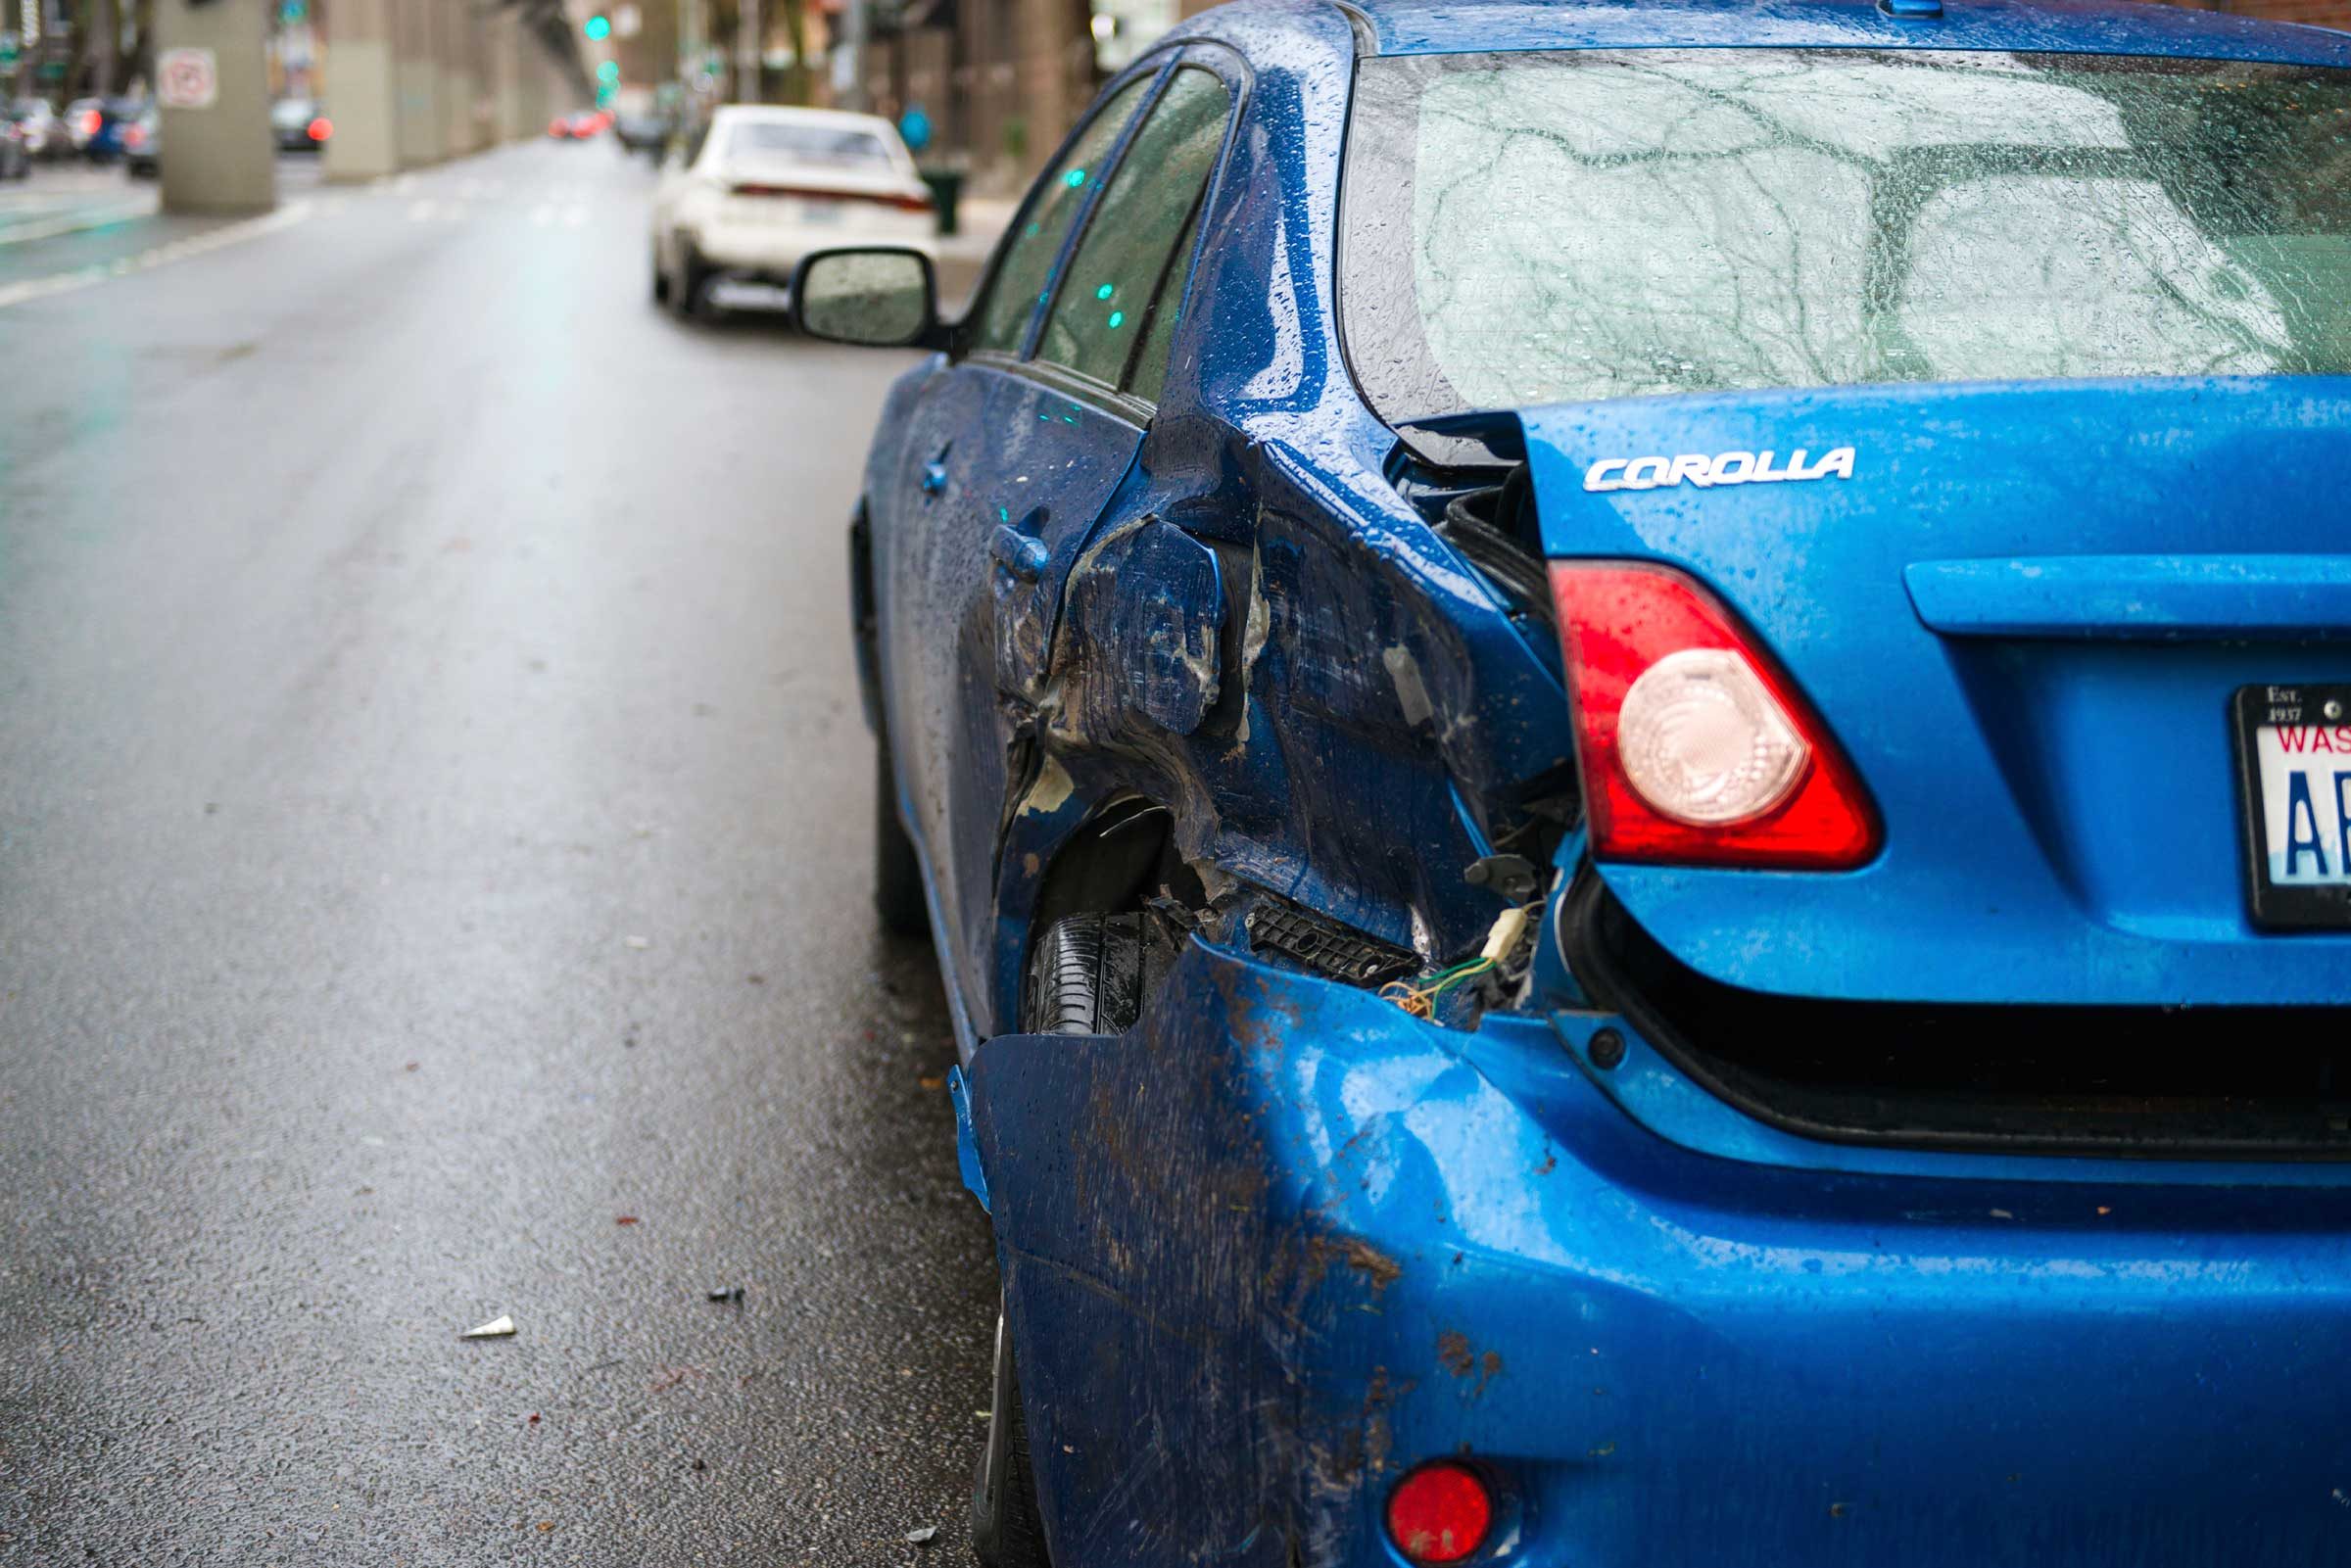 Reclami di assicurazione auto:15 delle scuse più bizzarre mai presentate 